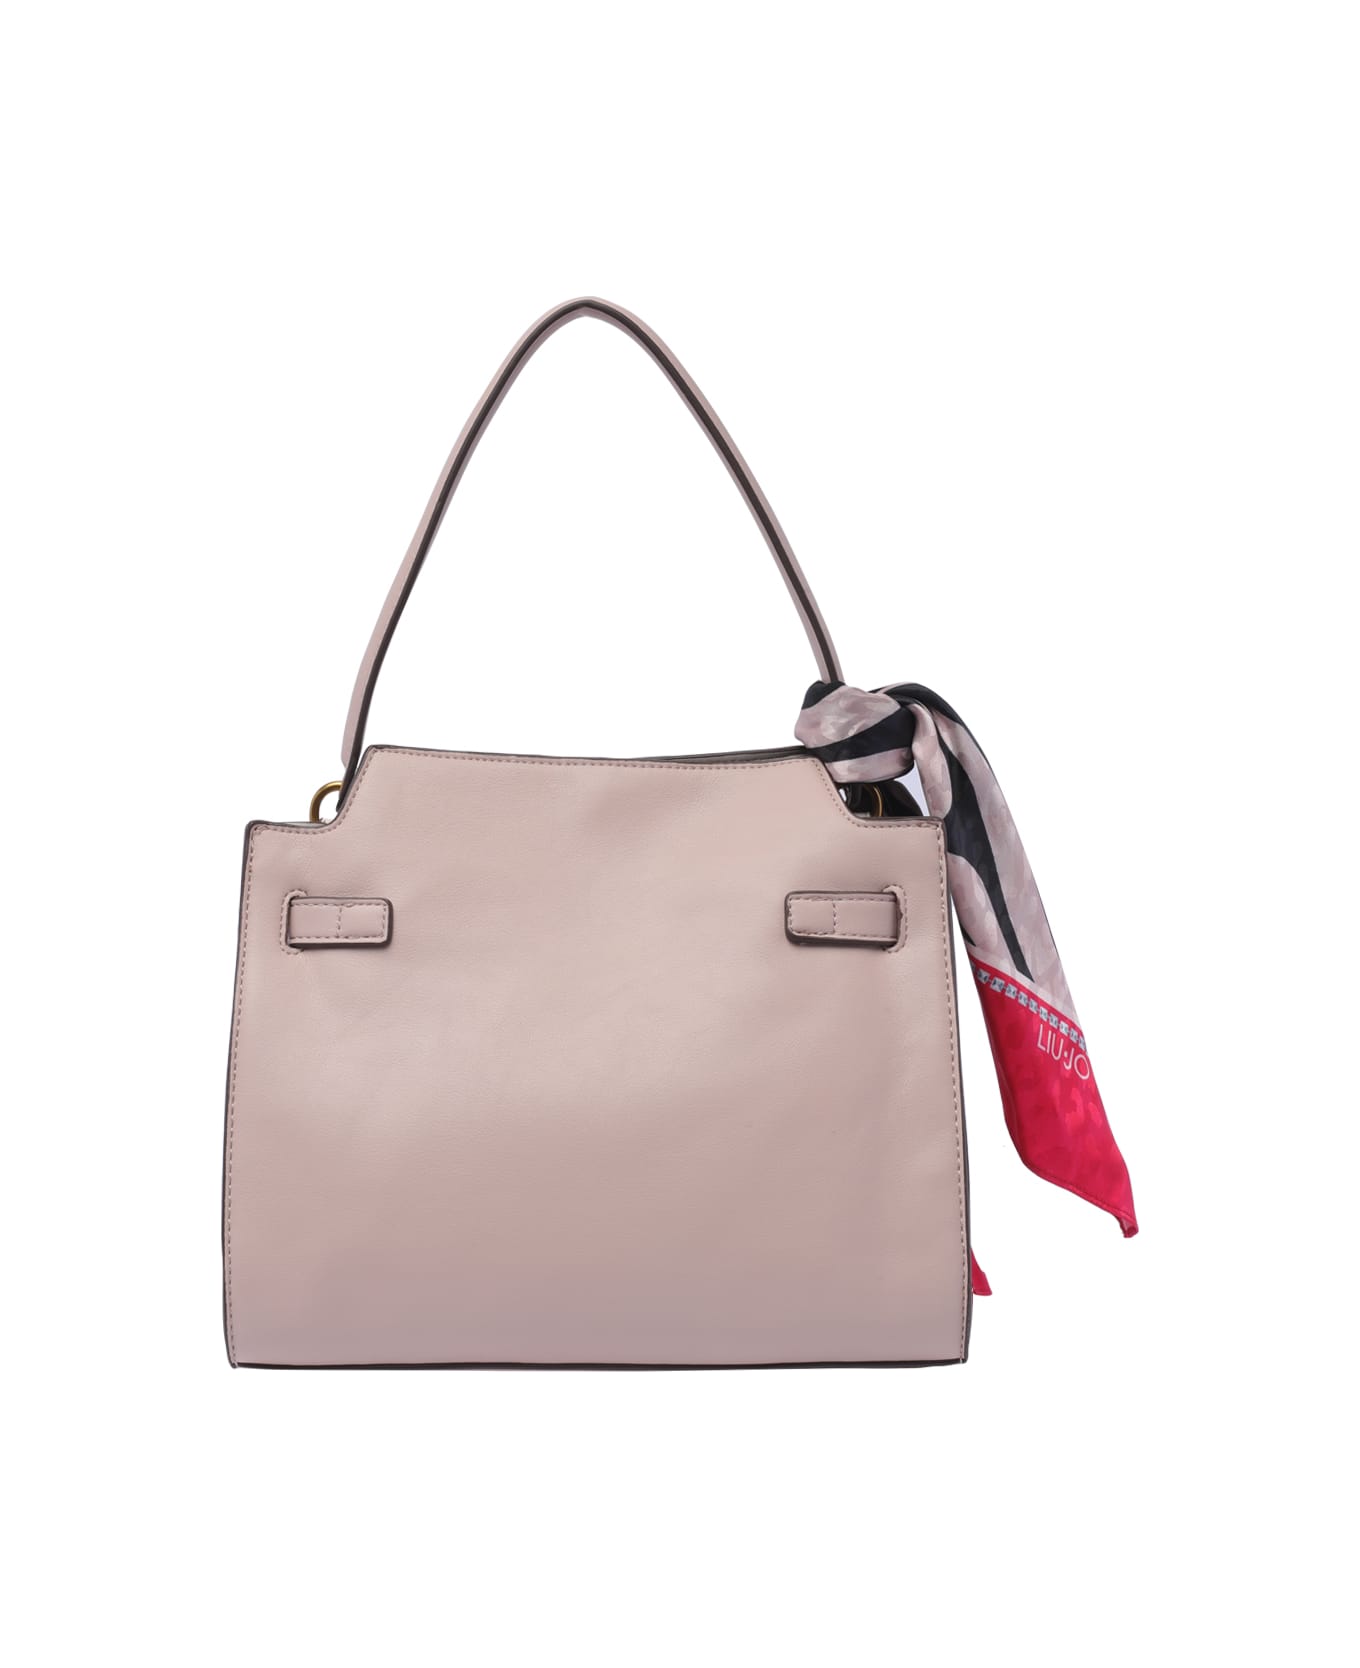 Liu-Jo Medium Logo Handbag - Rosa トートバッグ